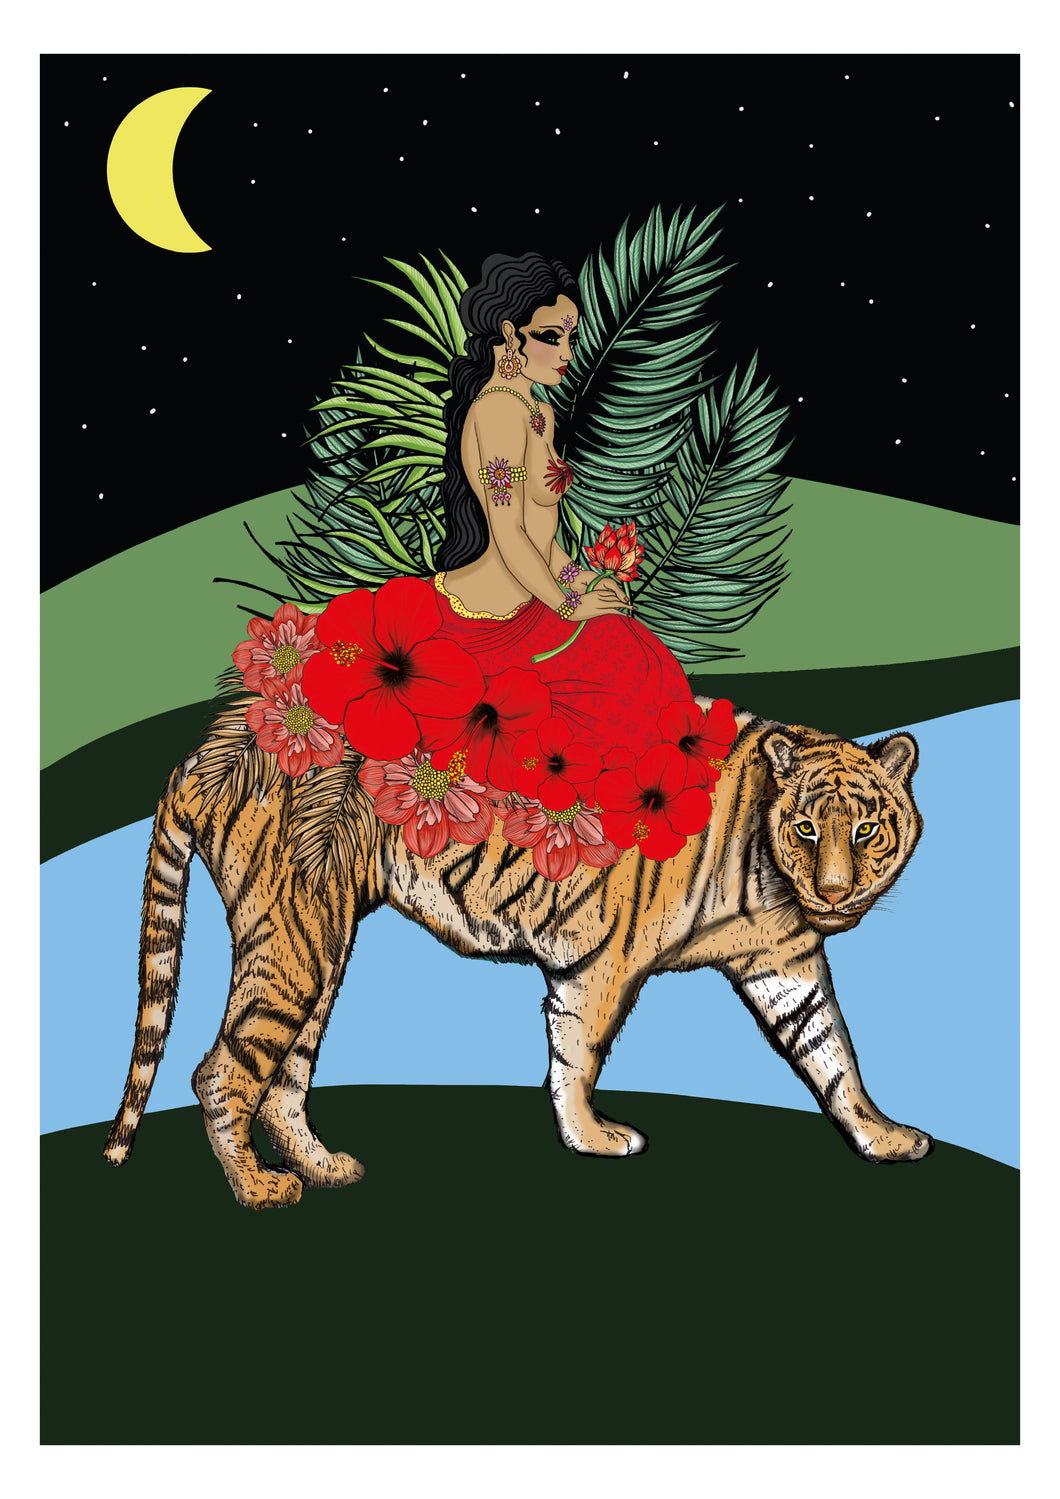 Msdre - Goddess Durga on Tiger 2021 Print